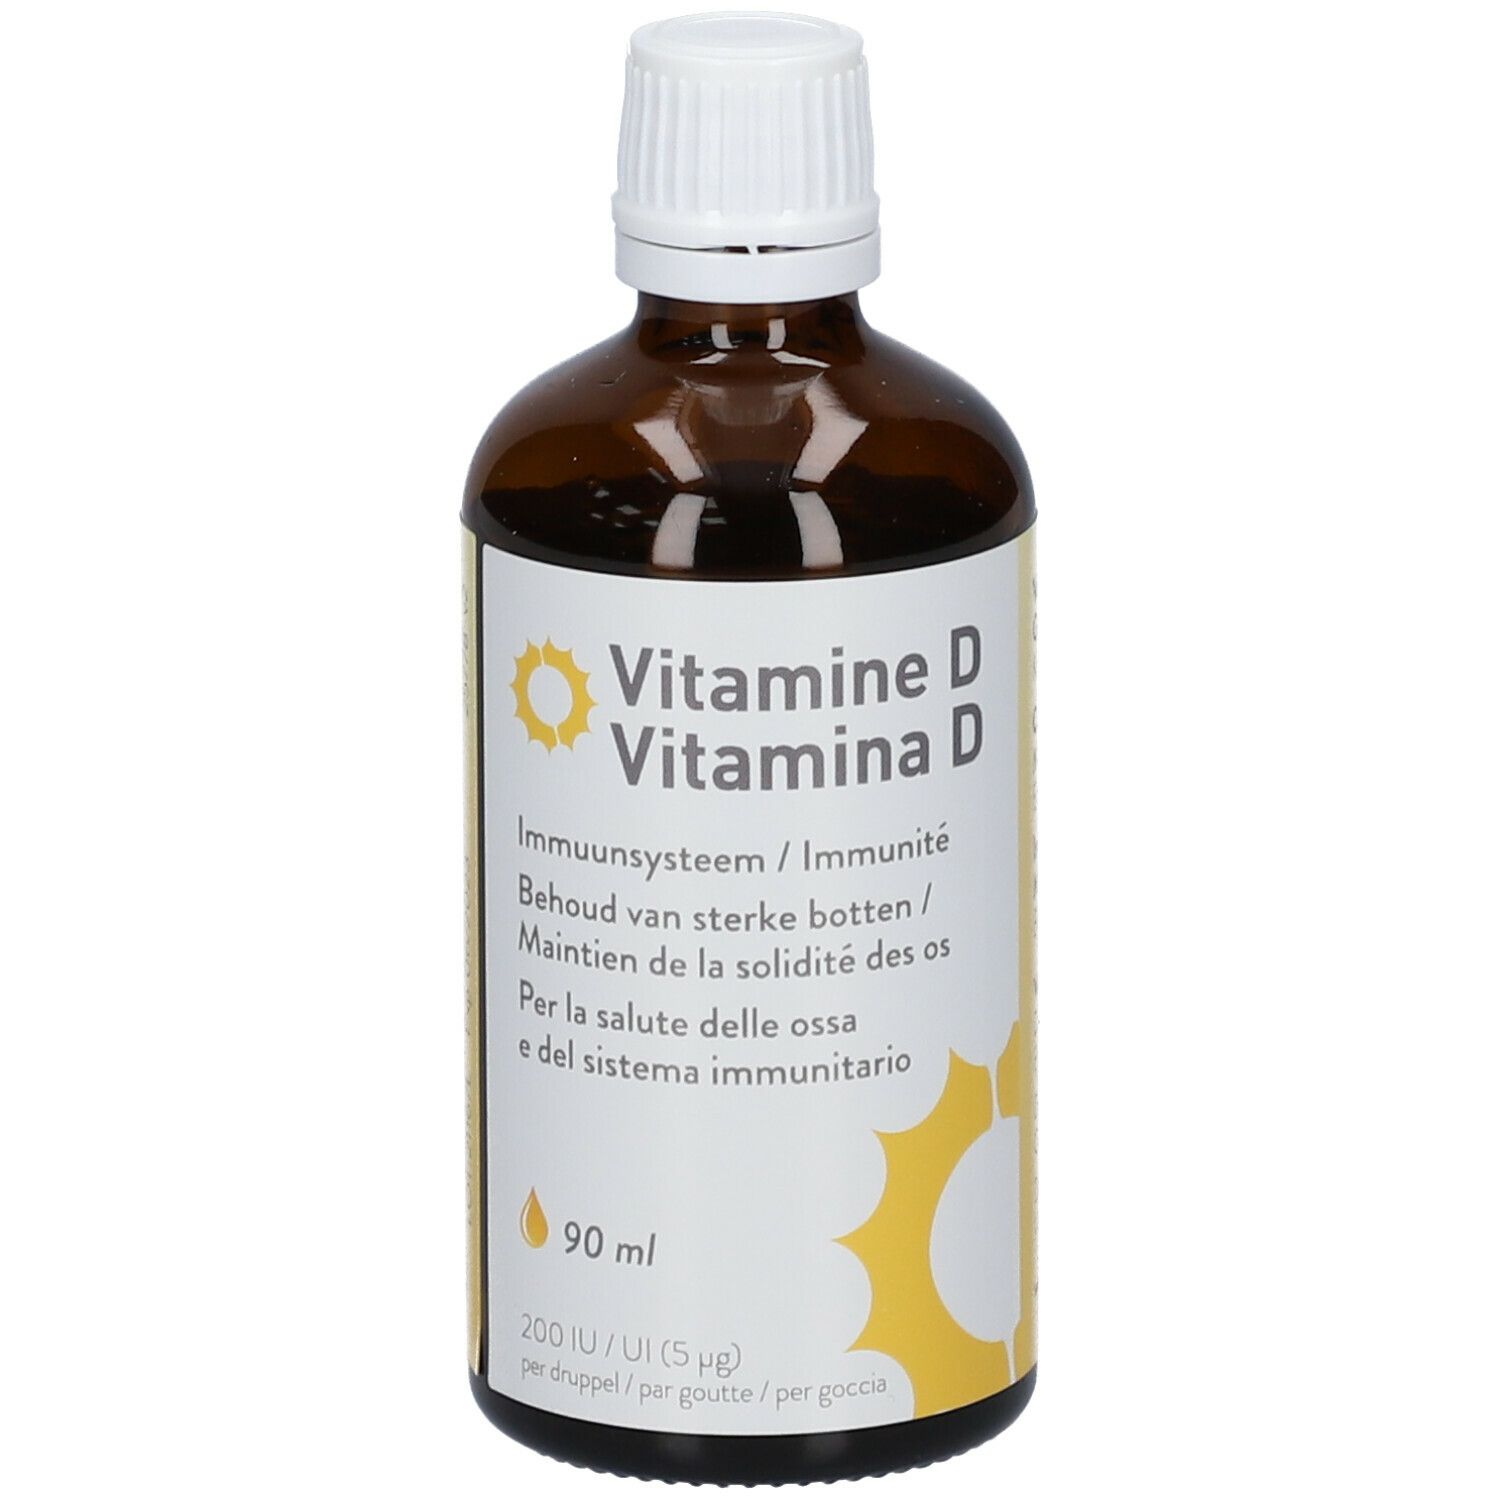 Vitamine D3 Liquid